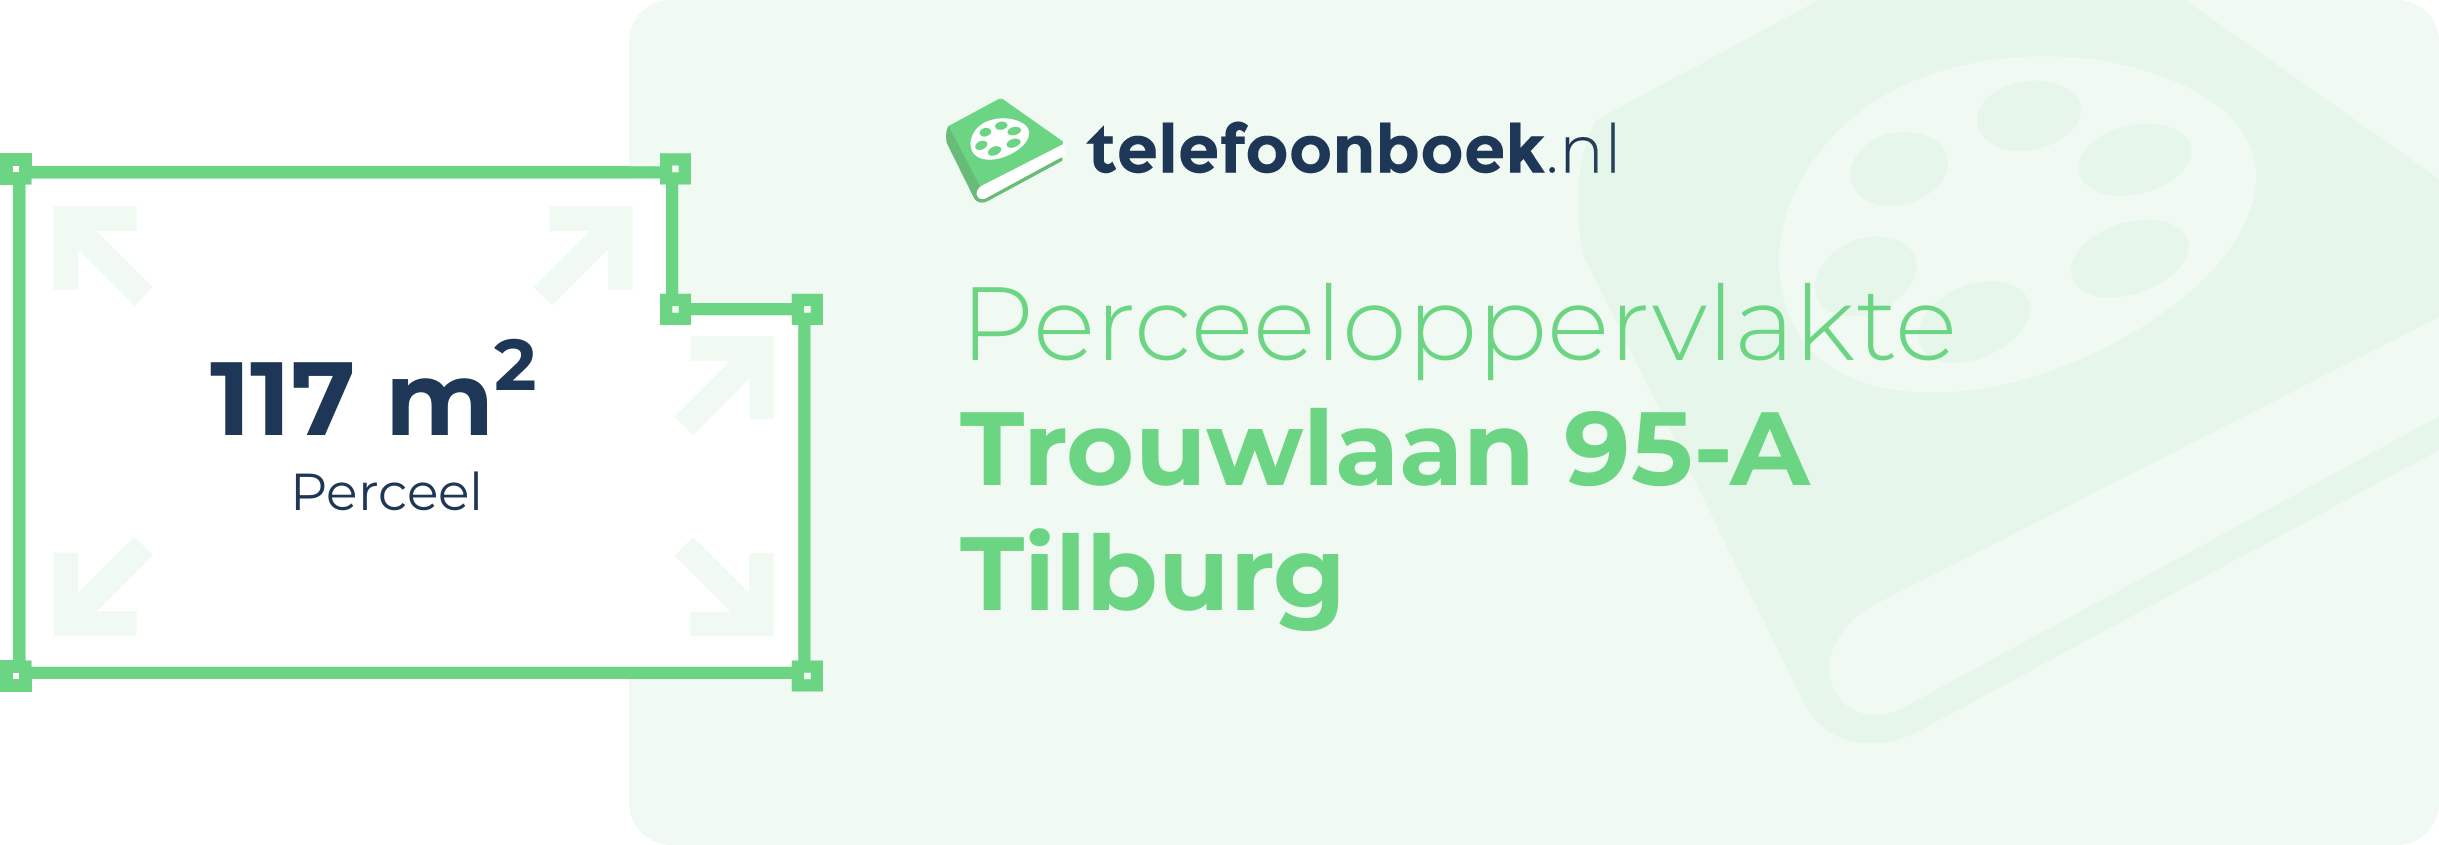 Perceeloppervlakte Trouwlaan 95-A Tilburg